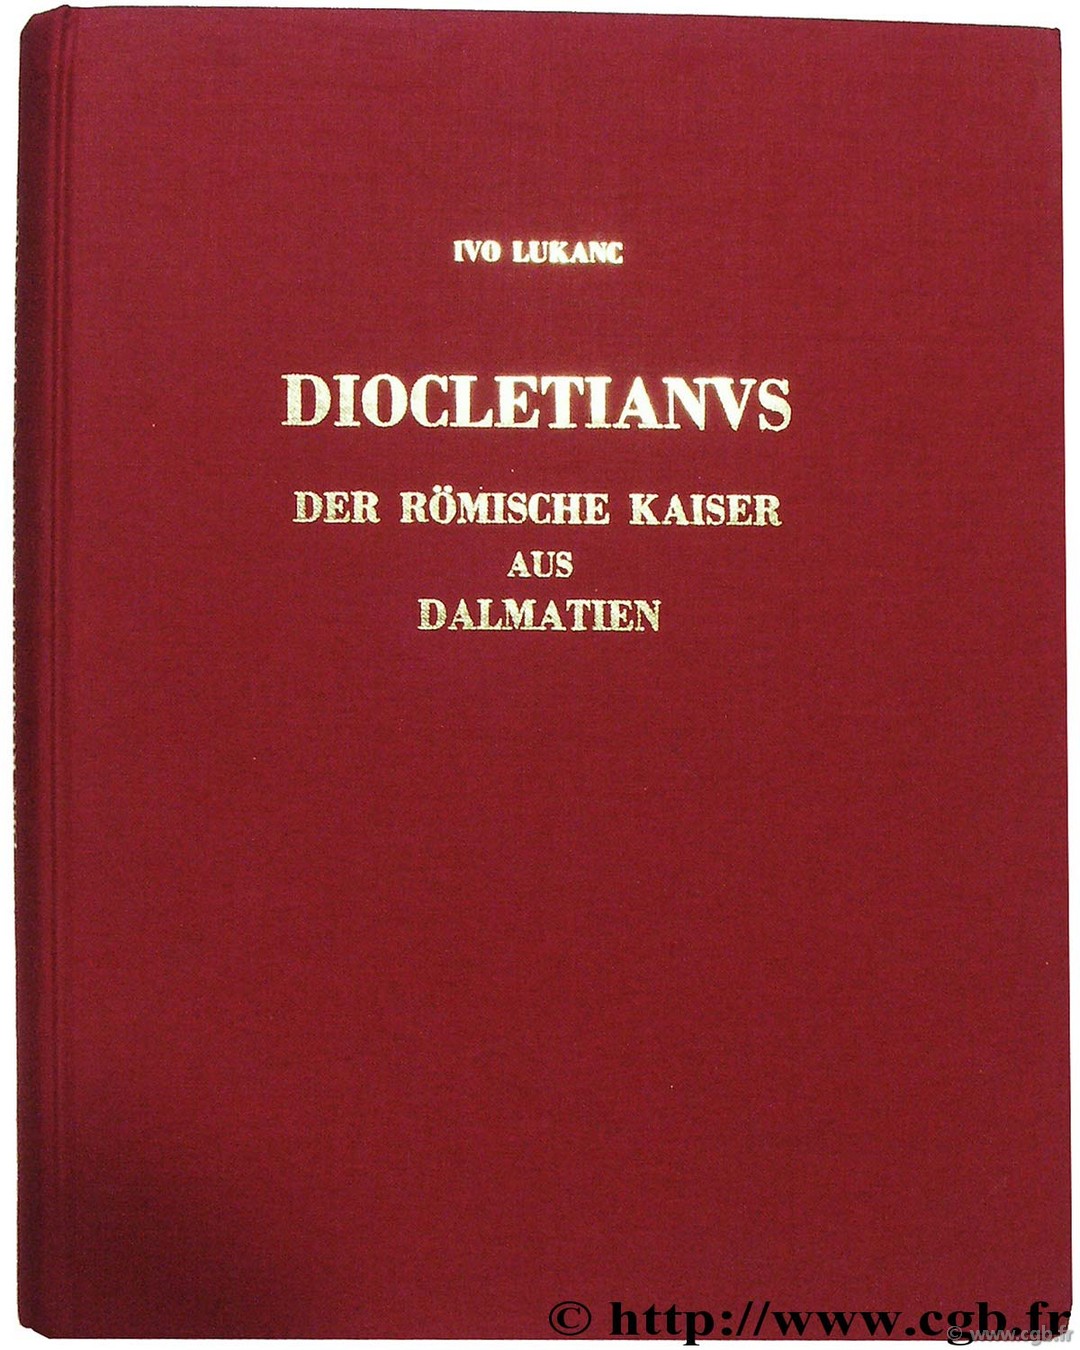 Diocletianus der Römische Kaiser aus Dalmatien LUKANC I.